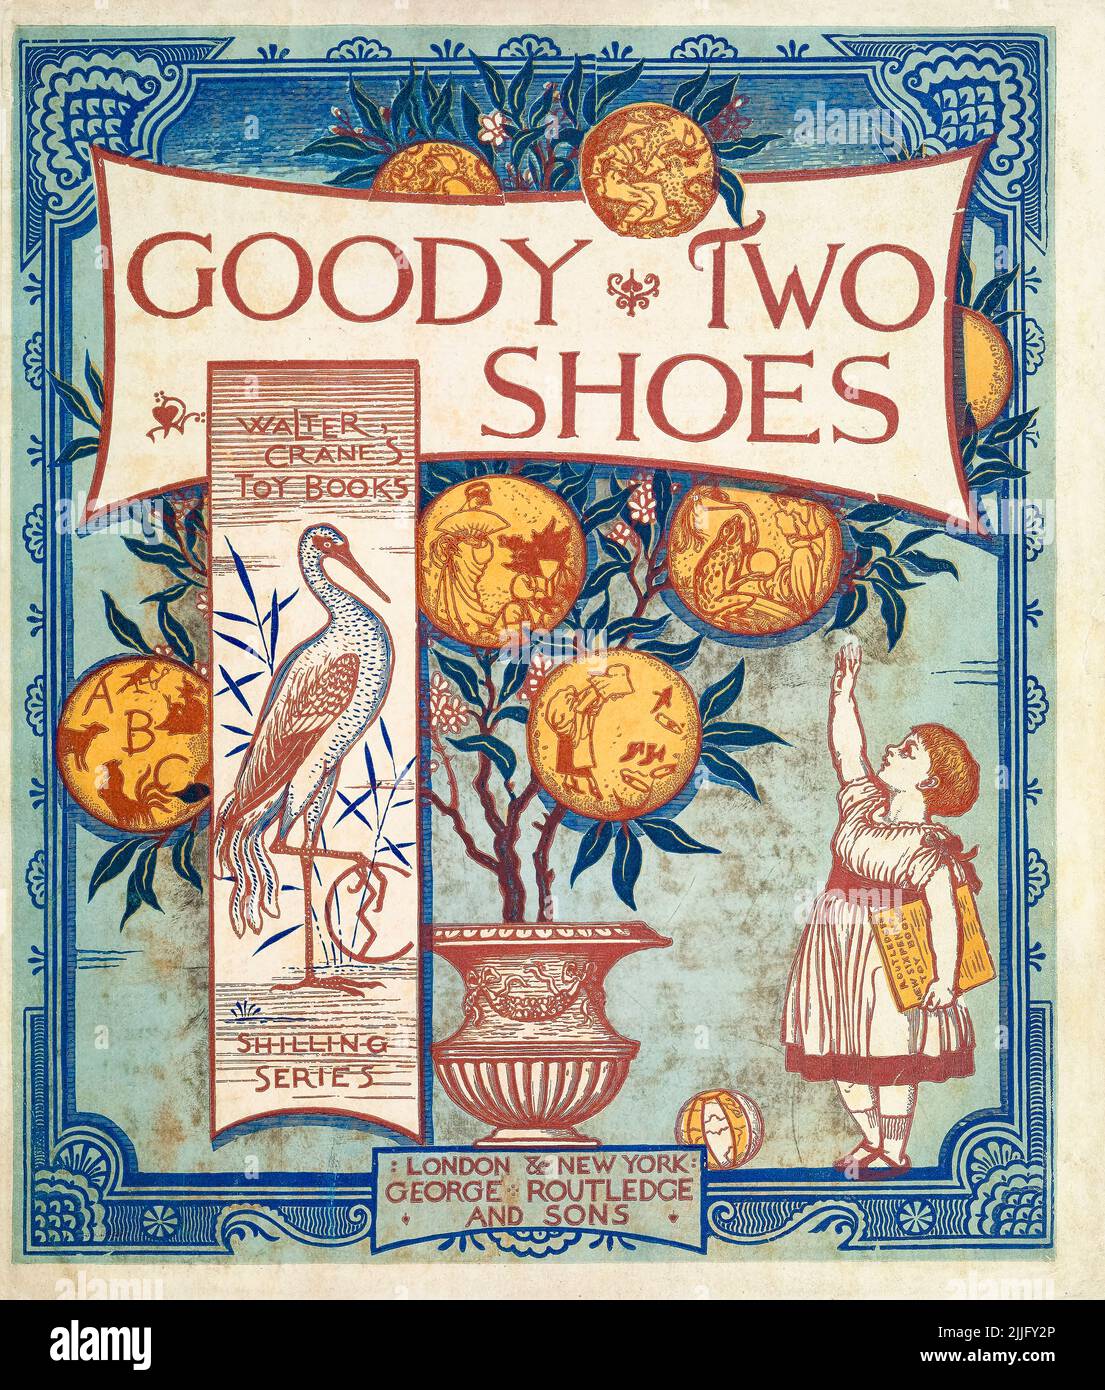 Goody Two Shoes, illustrazione del disegno di copertina del libro illustrato dei bambini da Walter Crane, 1874 Foto Stock